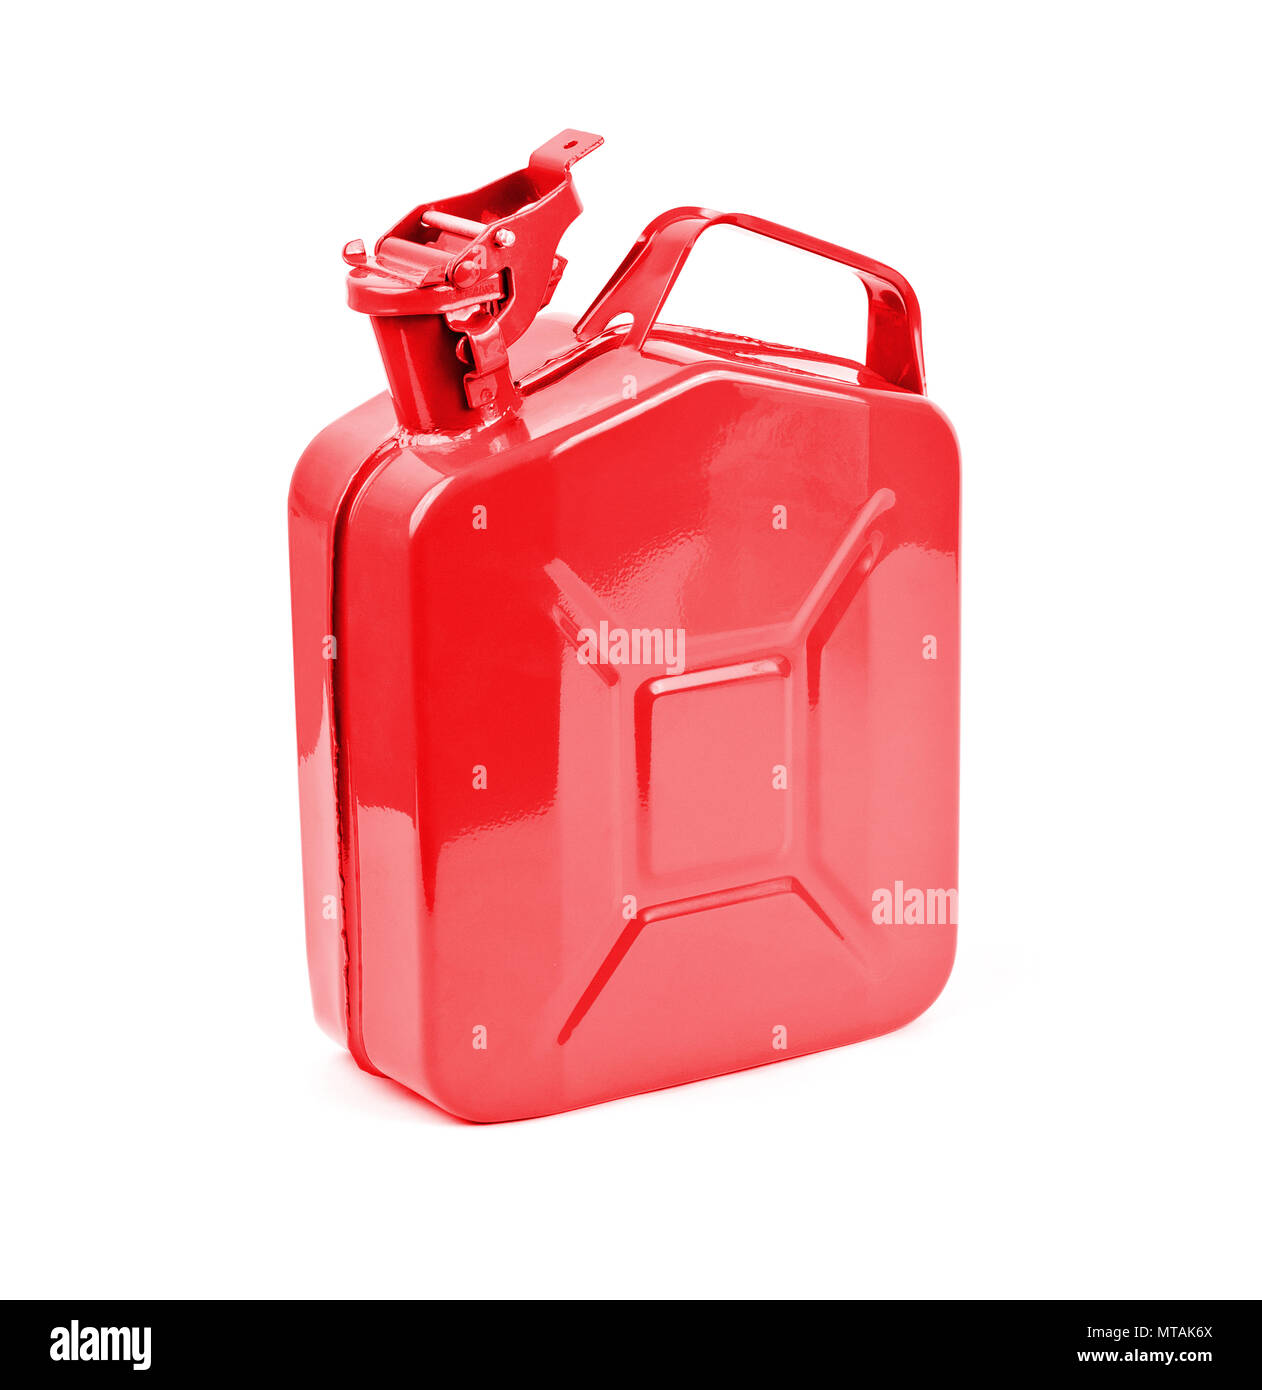 Rote Kanister auf weißem Hintergrund. Kanister Benzin, Diesel Gas